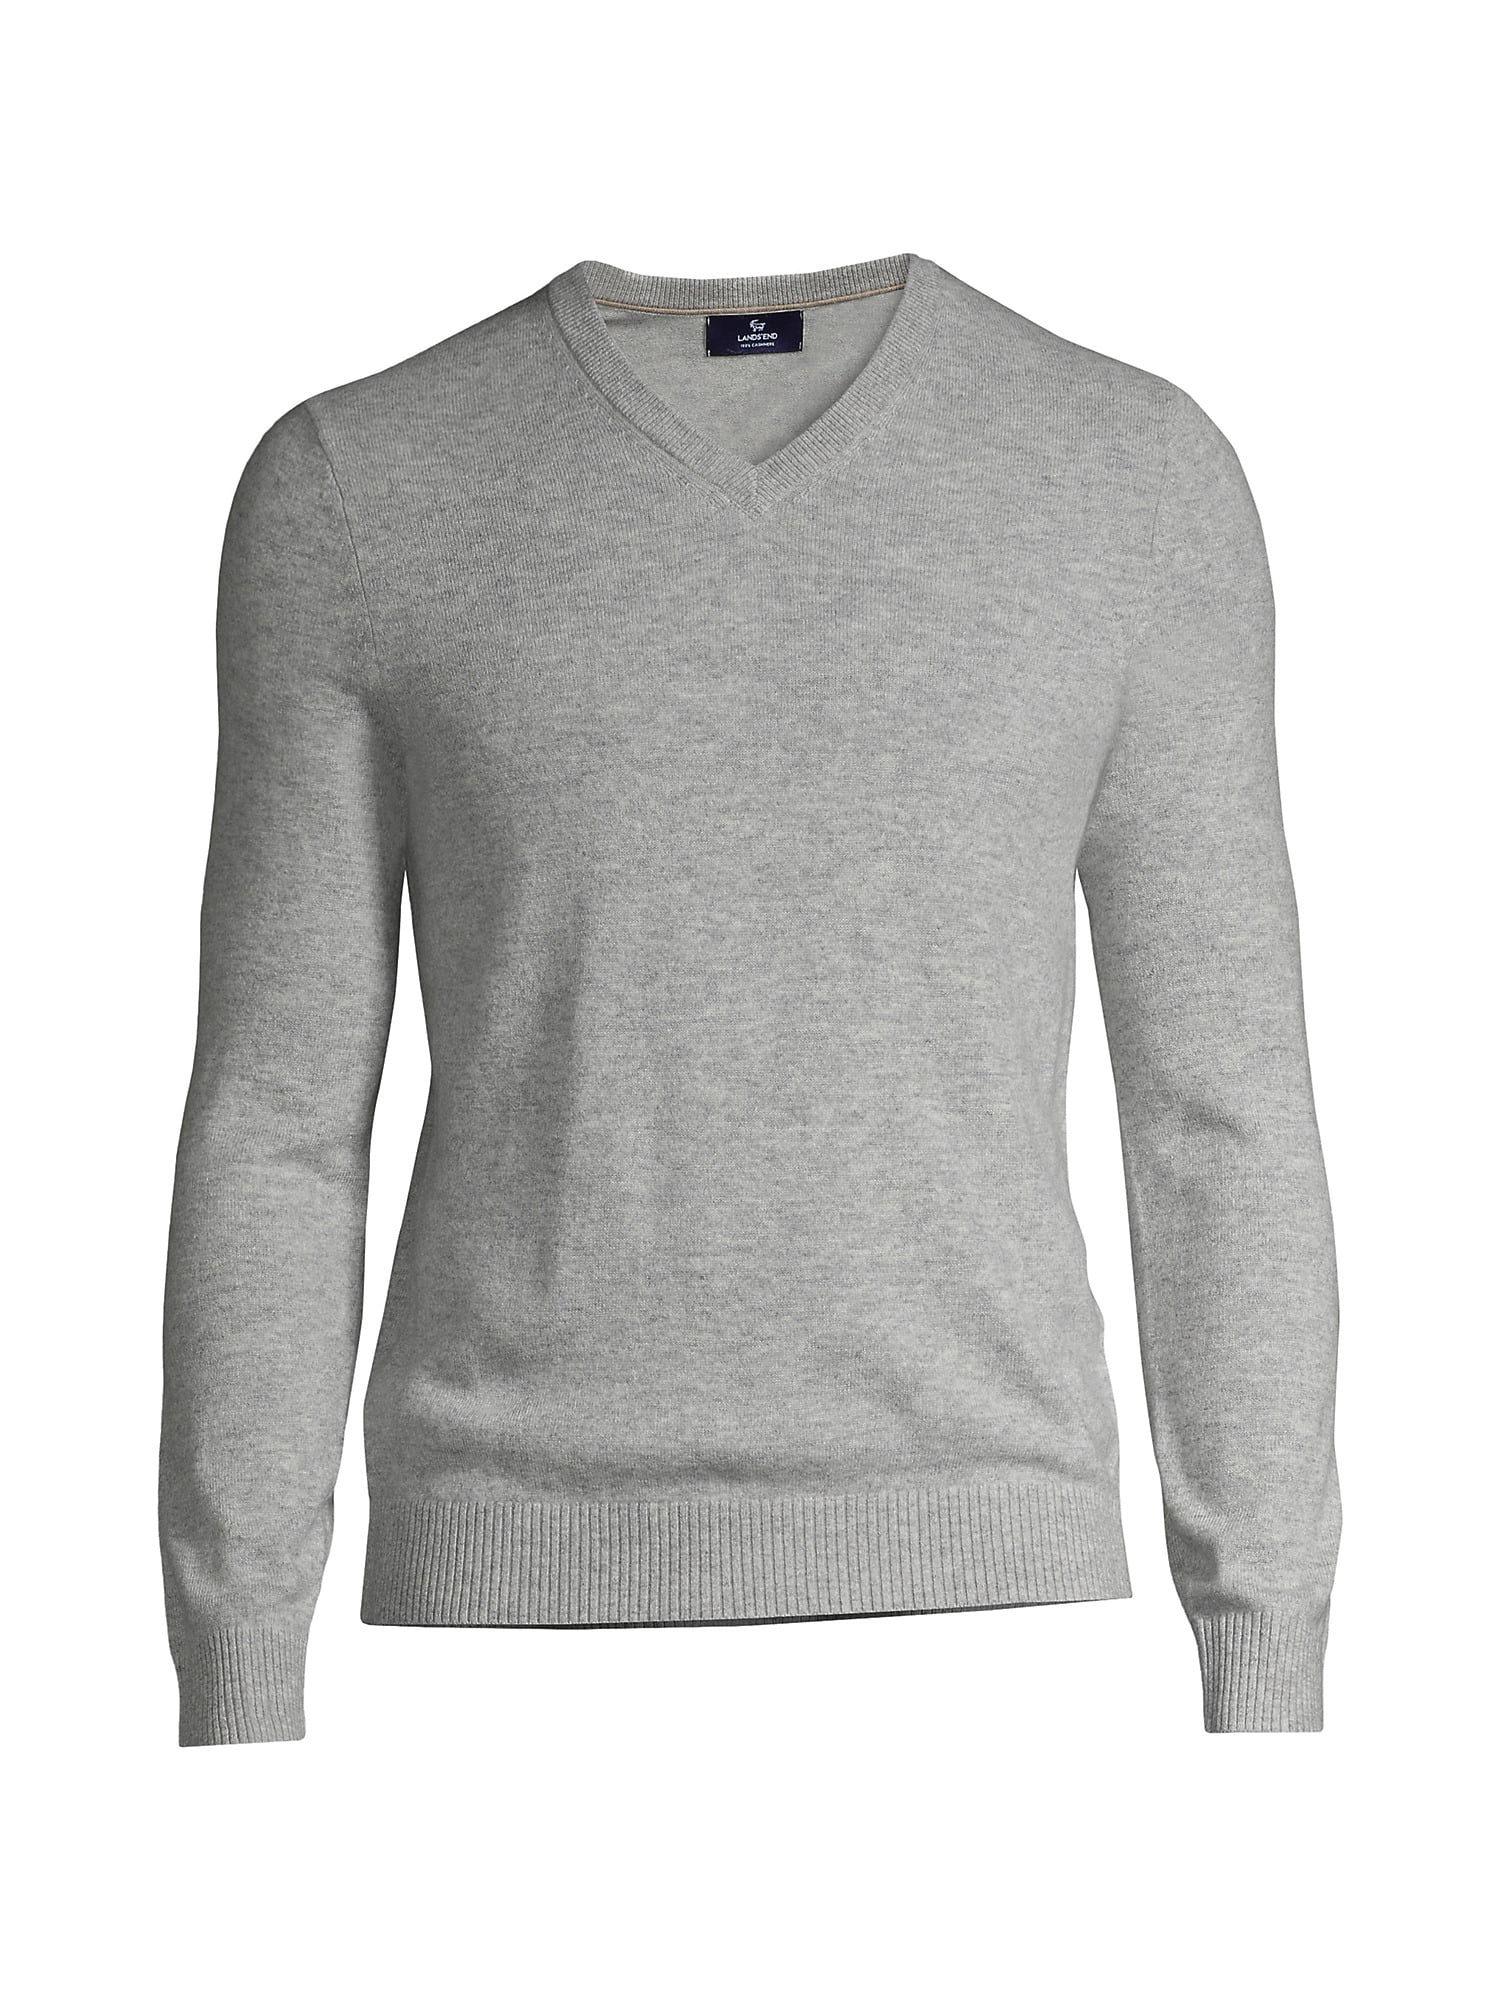 Lands' End Men's Fine Gauge Cashmere V-neck Sweater - Walmart.com